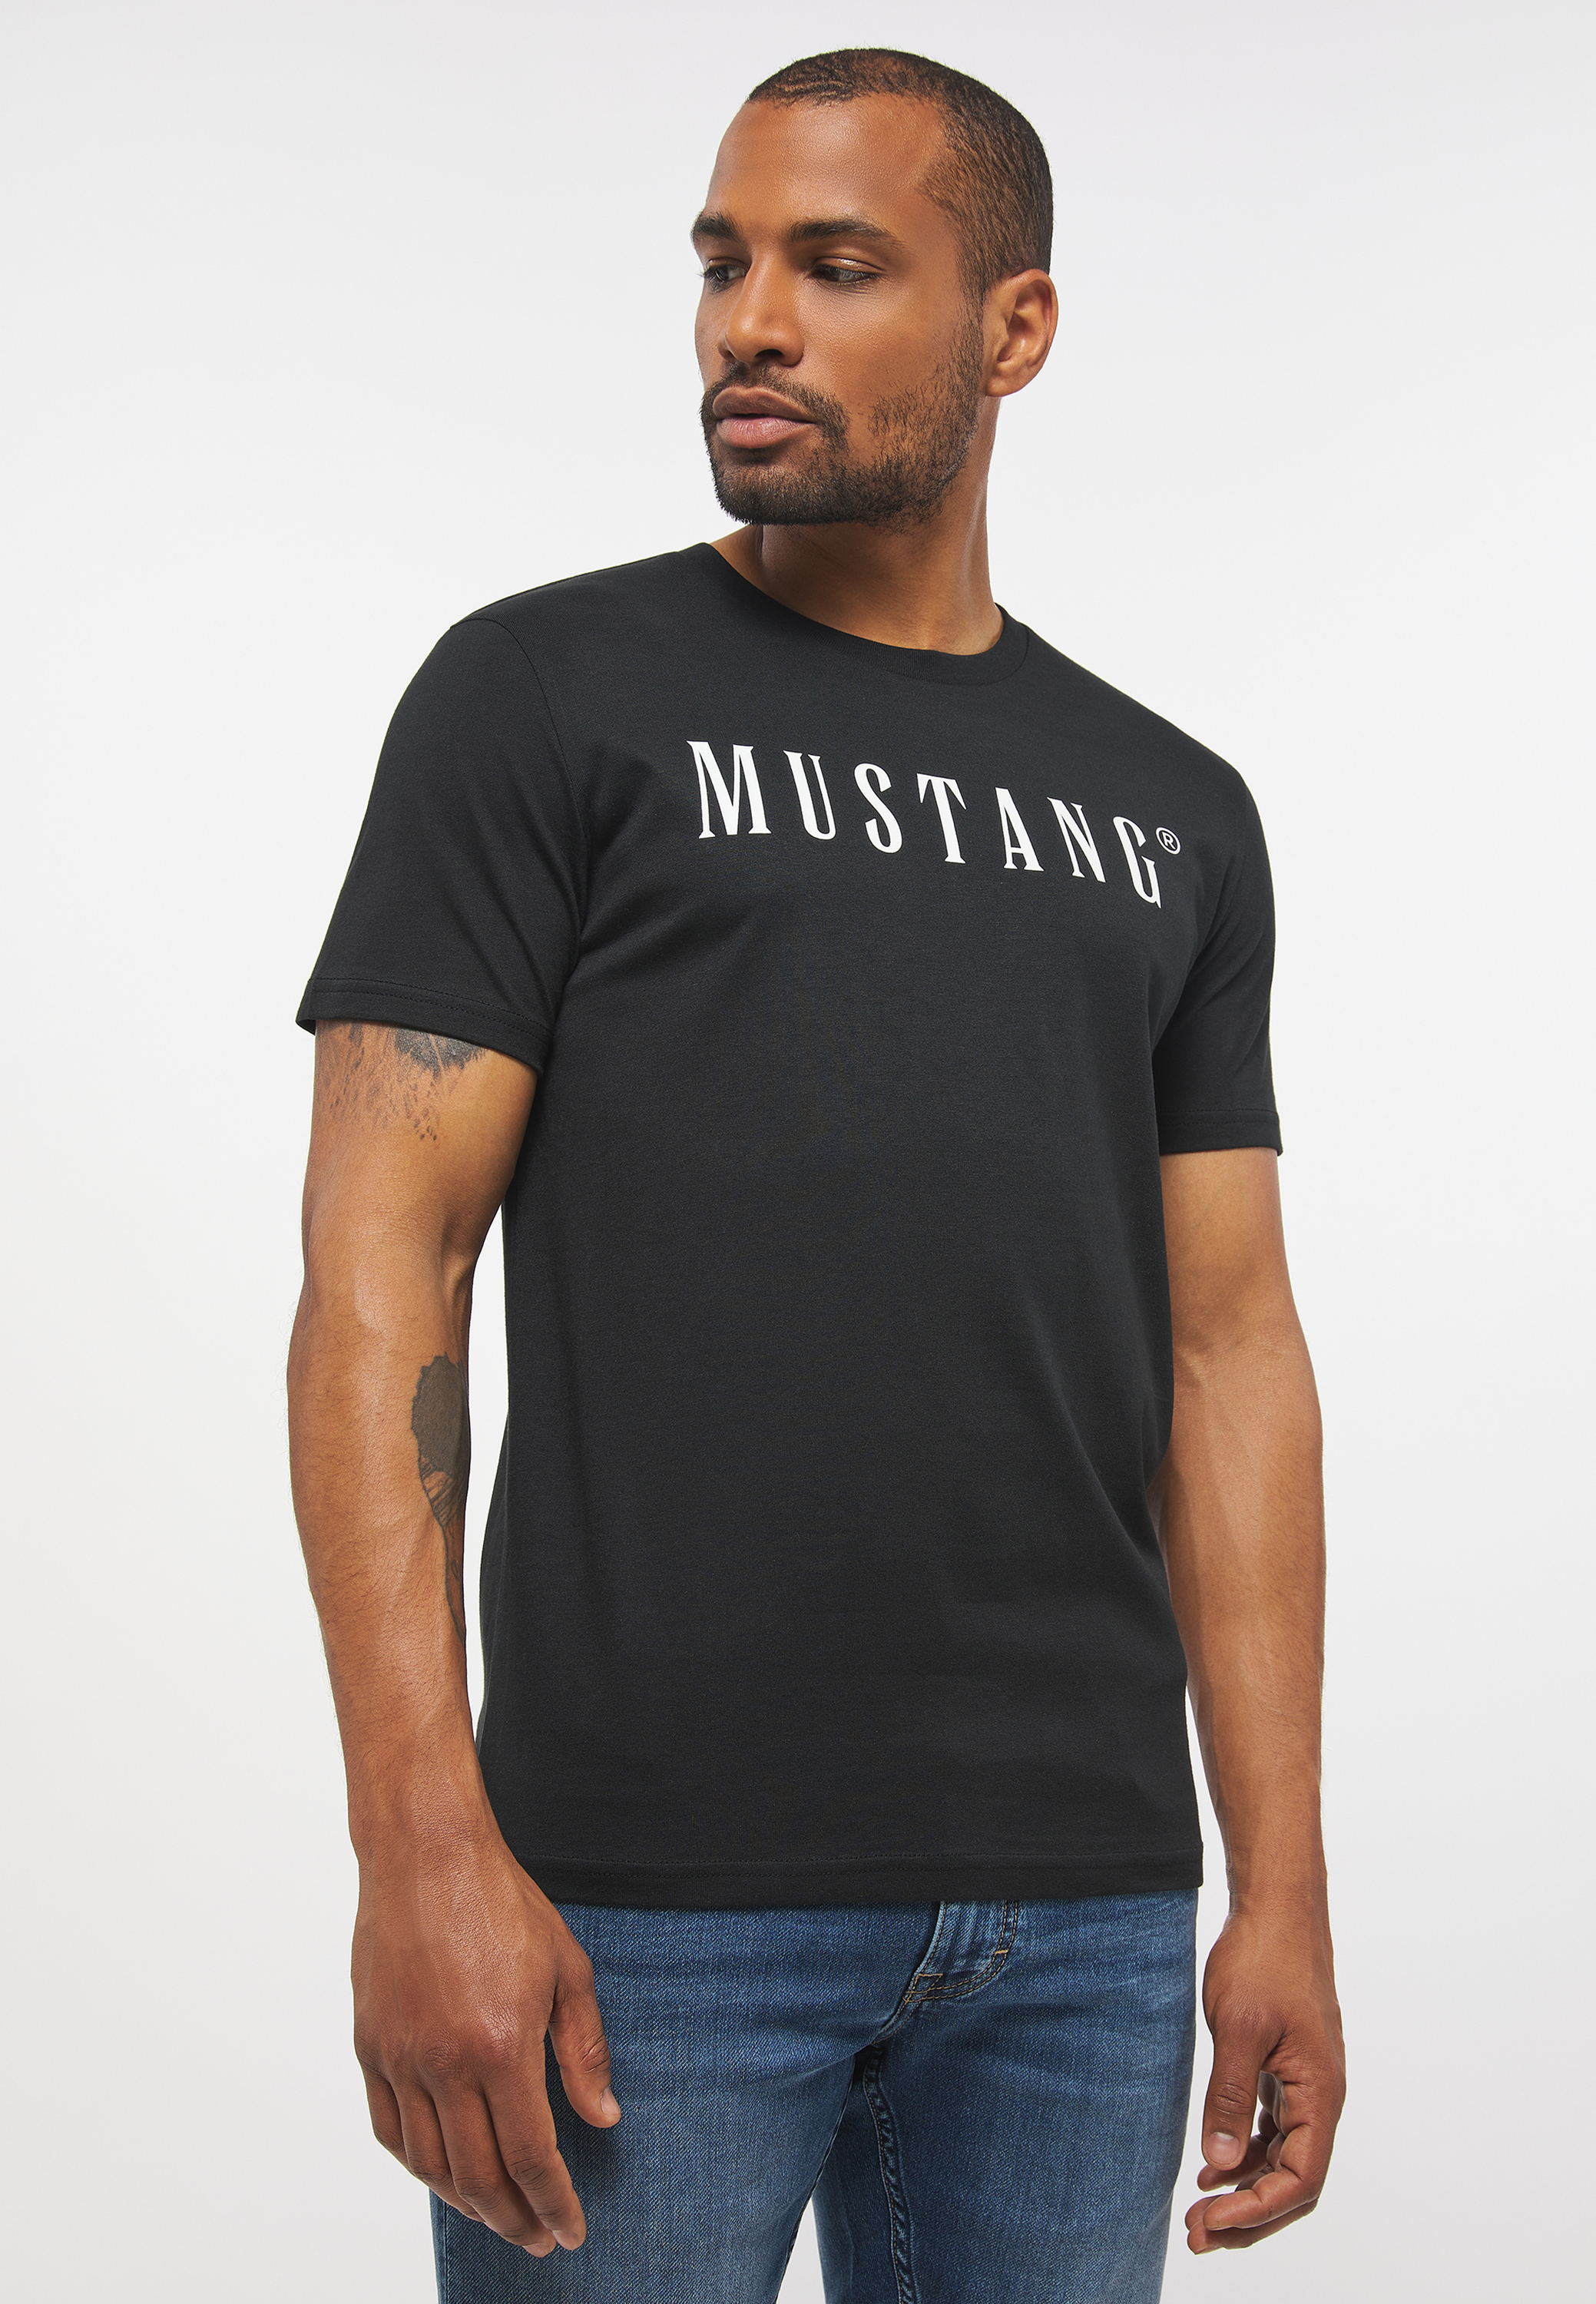 großem Frontprint kaufen jetzt bei mit bei T-Shirt Mustang